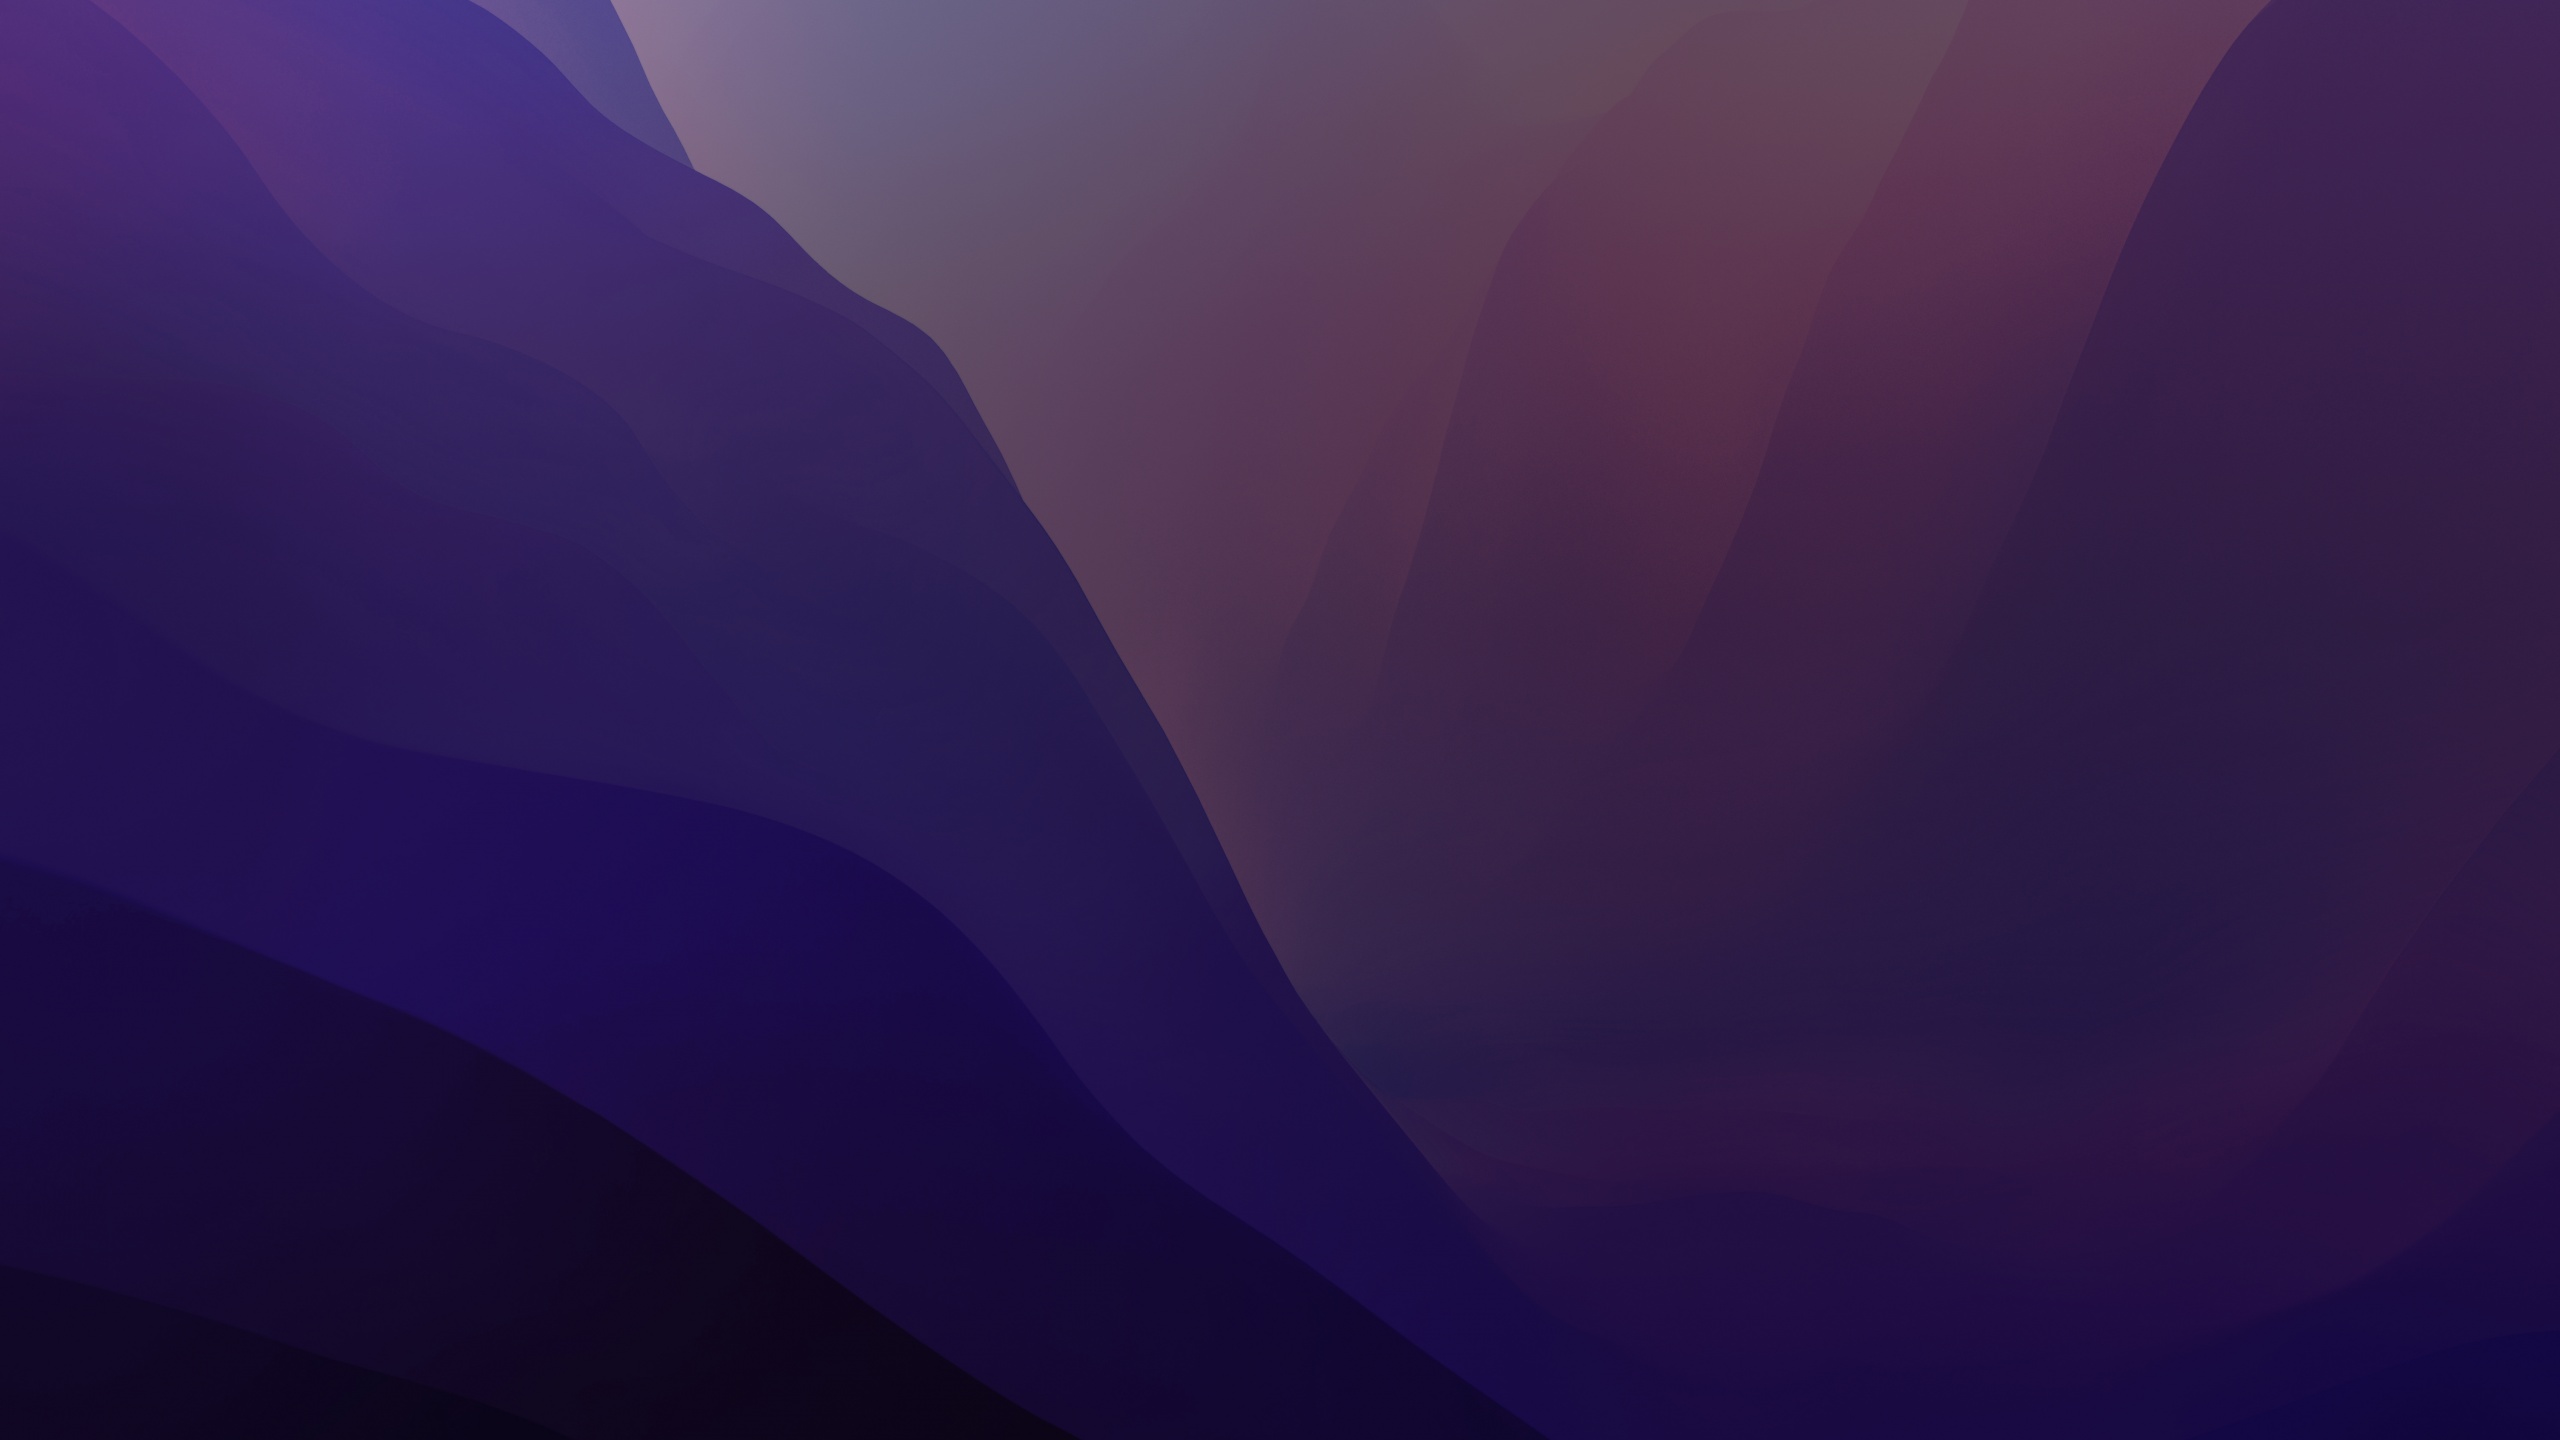 Hãy khoác lên màn hình máy tính của bạn sự đẹp tuyệt đẹp của hình nền macOS Monterey màu tím này. Nó sẽ cho bạn cảm giác như bạn đang ngắm nhìn một đại dương kỳ diệu màu tím.